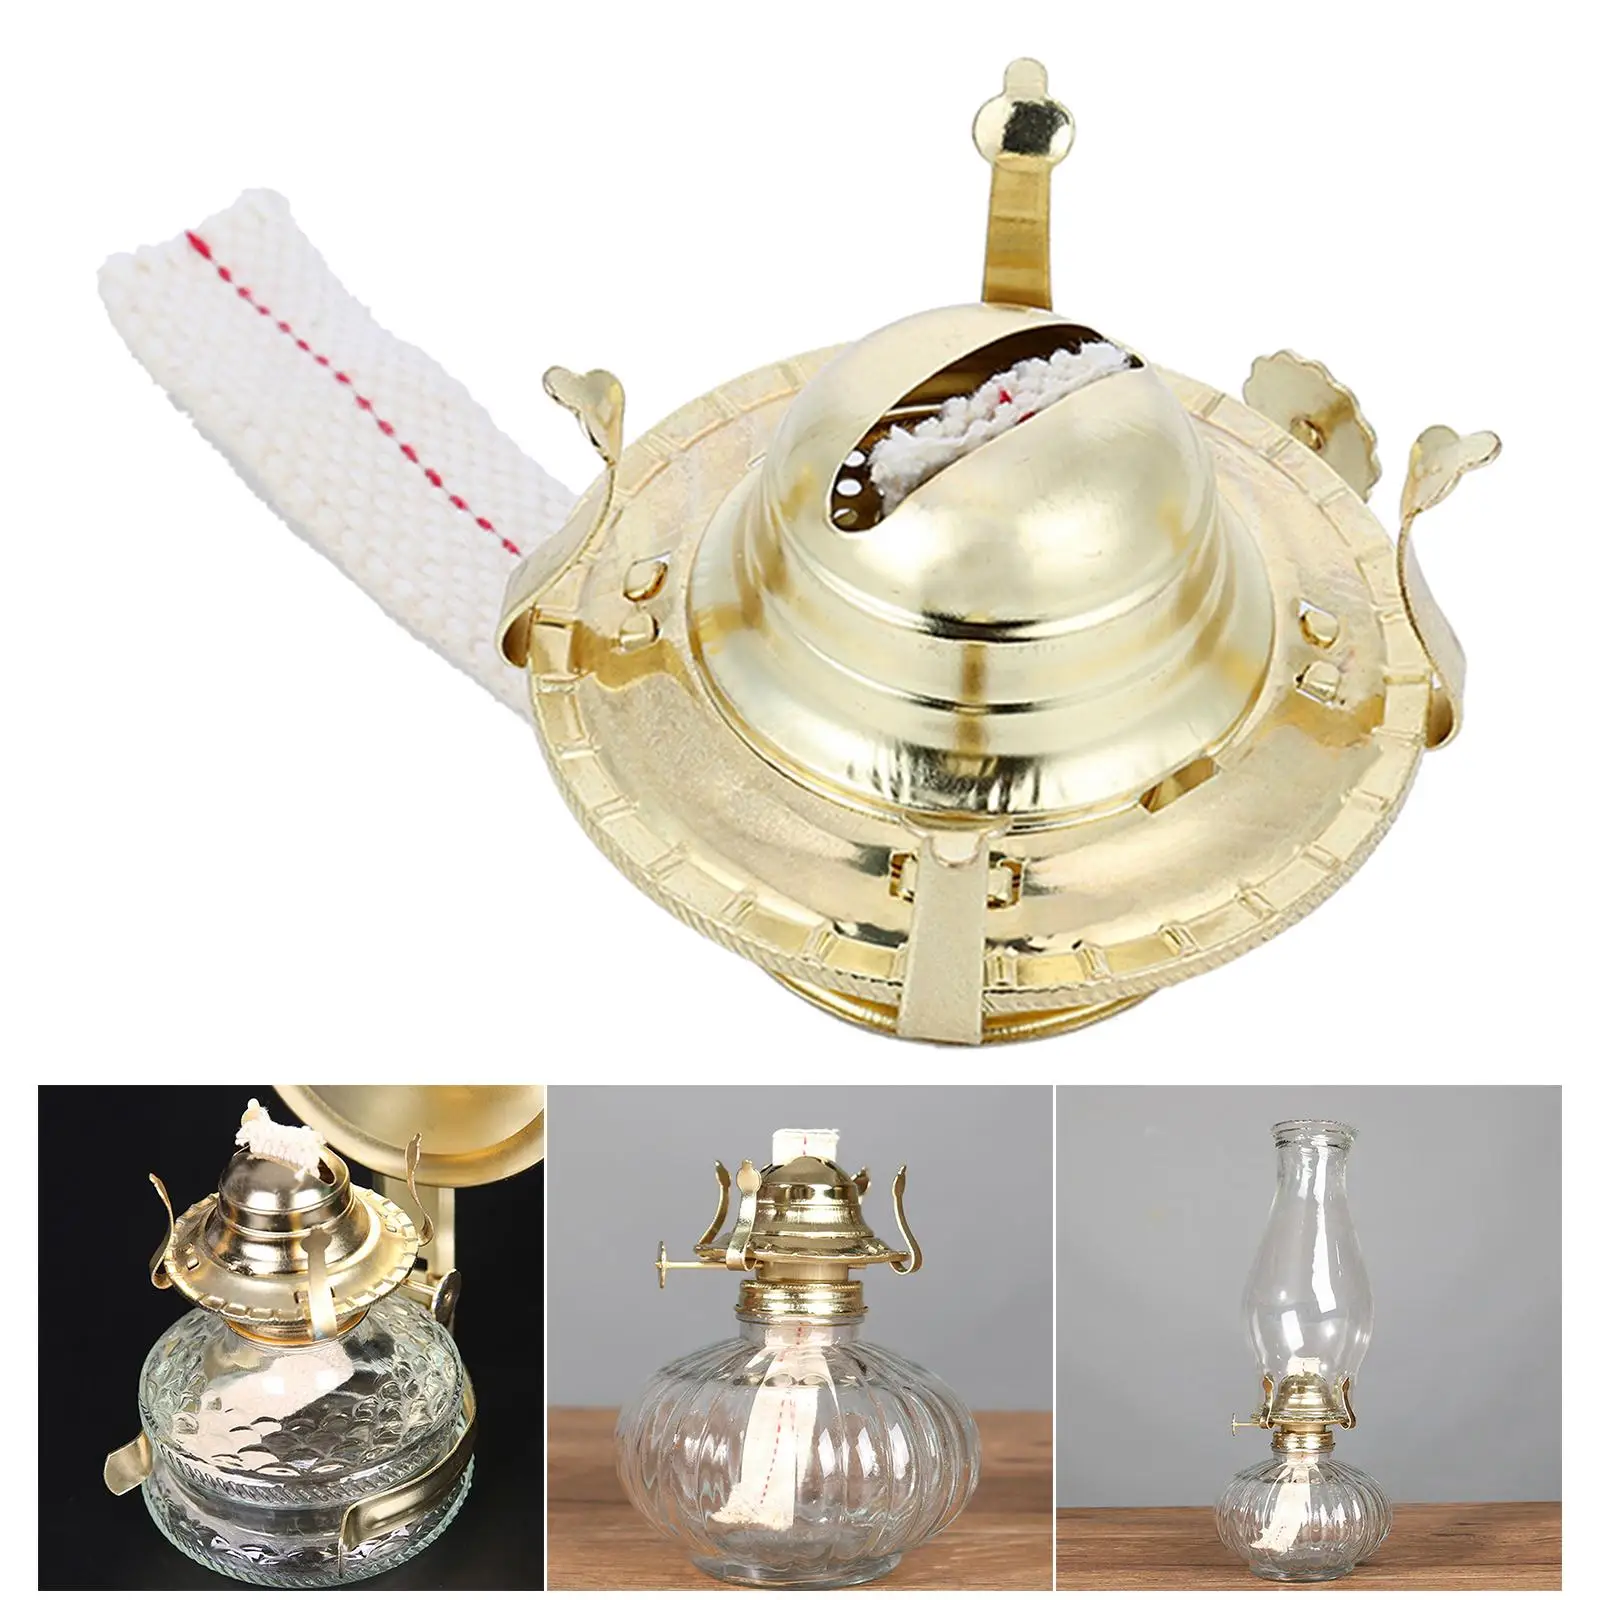 Vintage Style Oil Lamp Burner Kerosene Oil Lamp Holder Durable Retro Style